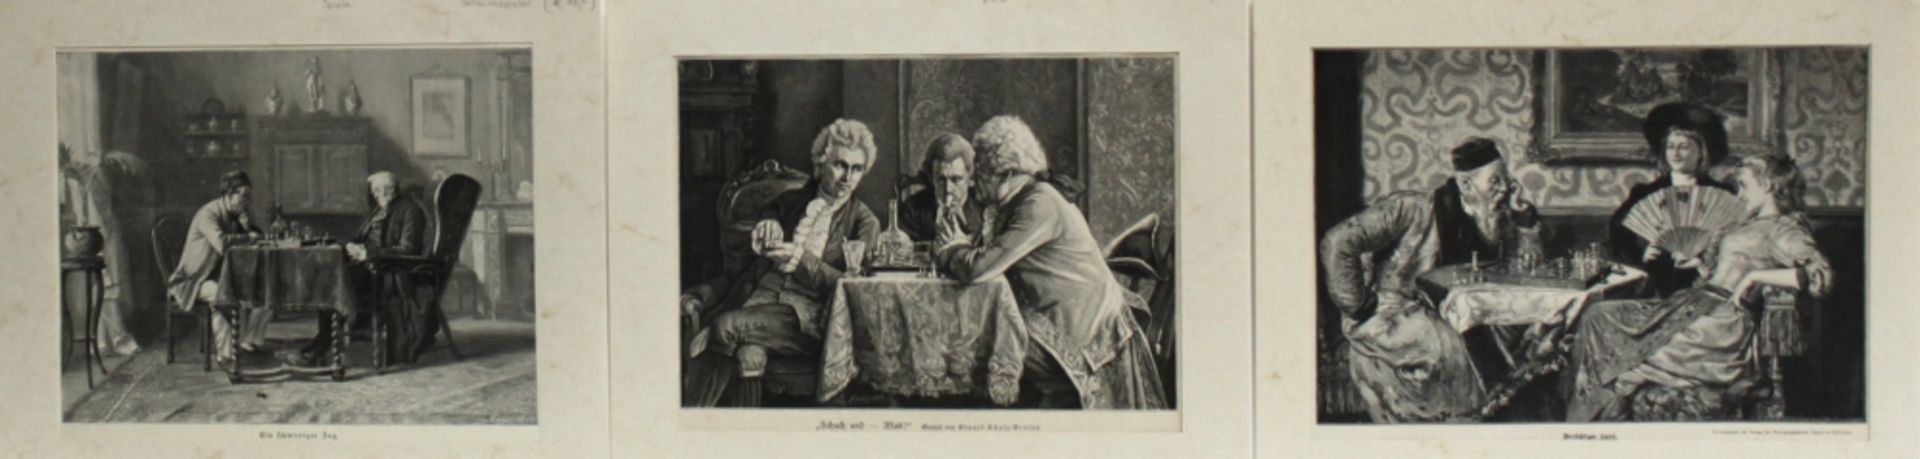 Schachgraphik. Konvolut von 6 Holzstichen / Drucken mit Schachmotiven aus der Zeit um 1890.